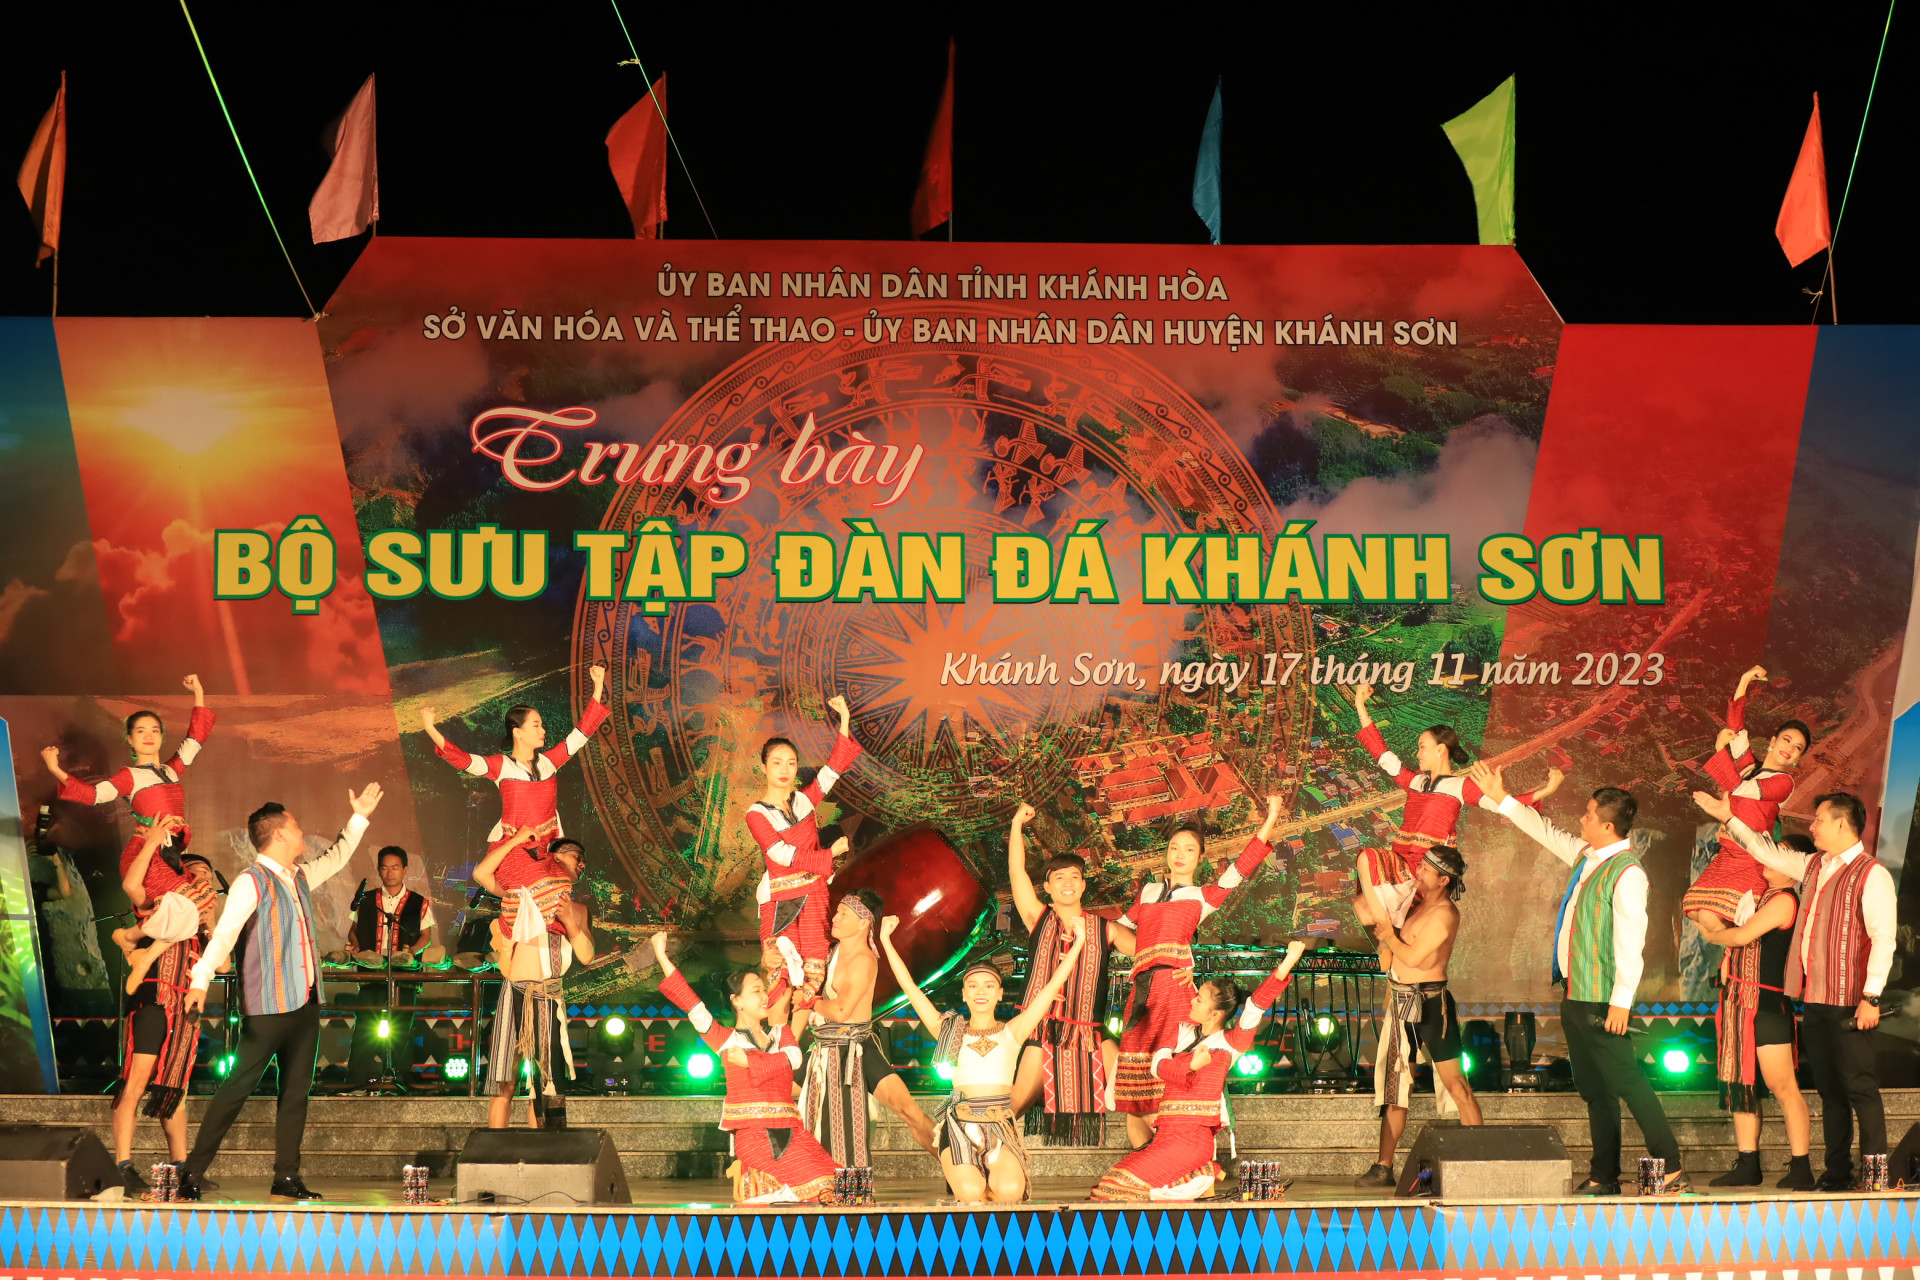 Chương trình văn nghệ mang màu sắc văn hóa truyền thống được các ca sĩ, diễn viên của Đoàn ca múa nhạc Hải Đăng mang đến cho khán giả huyện Khánh Sơn.